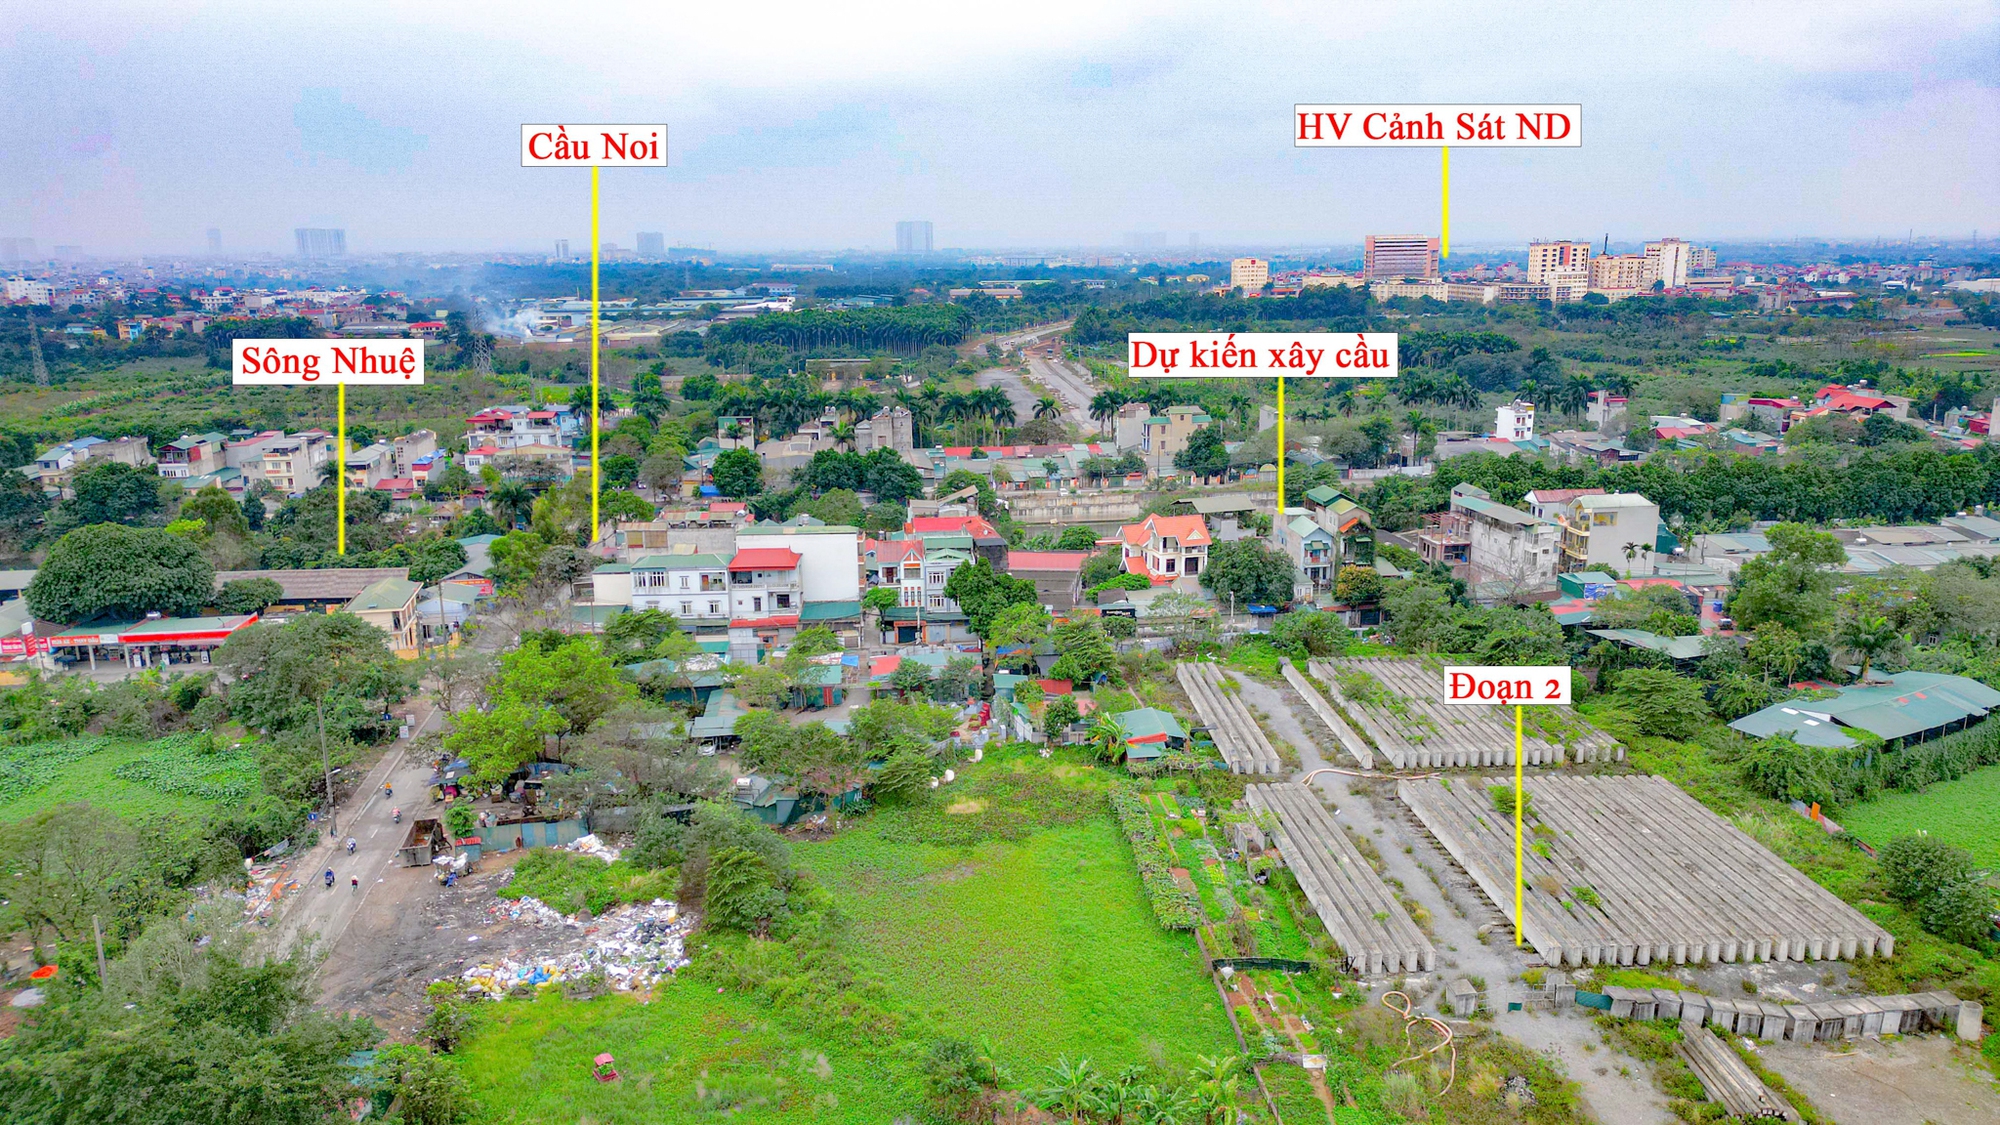 Toàn cảnh tuyến đường 10 làn xe xuyên qua khu đô thị đắt đỏ bậc nhất Hà Nội, tương lai sẽ làm thay đổi toàn bộ bất động sản trục Hồ Tây - Ba Vì- Ảnh 5.